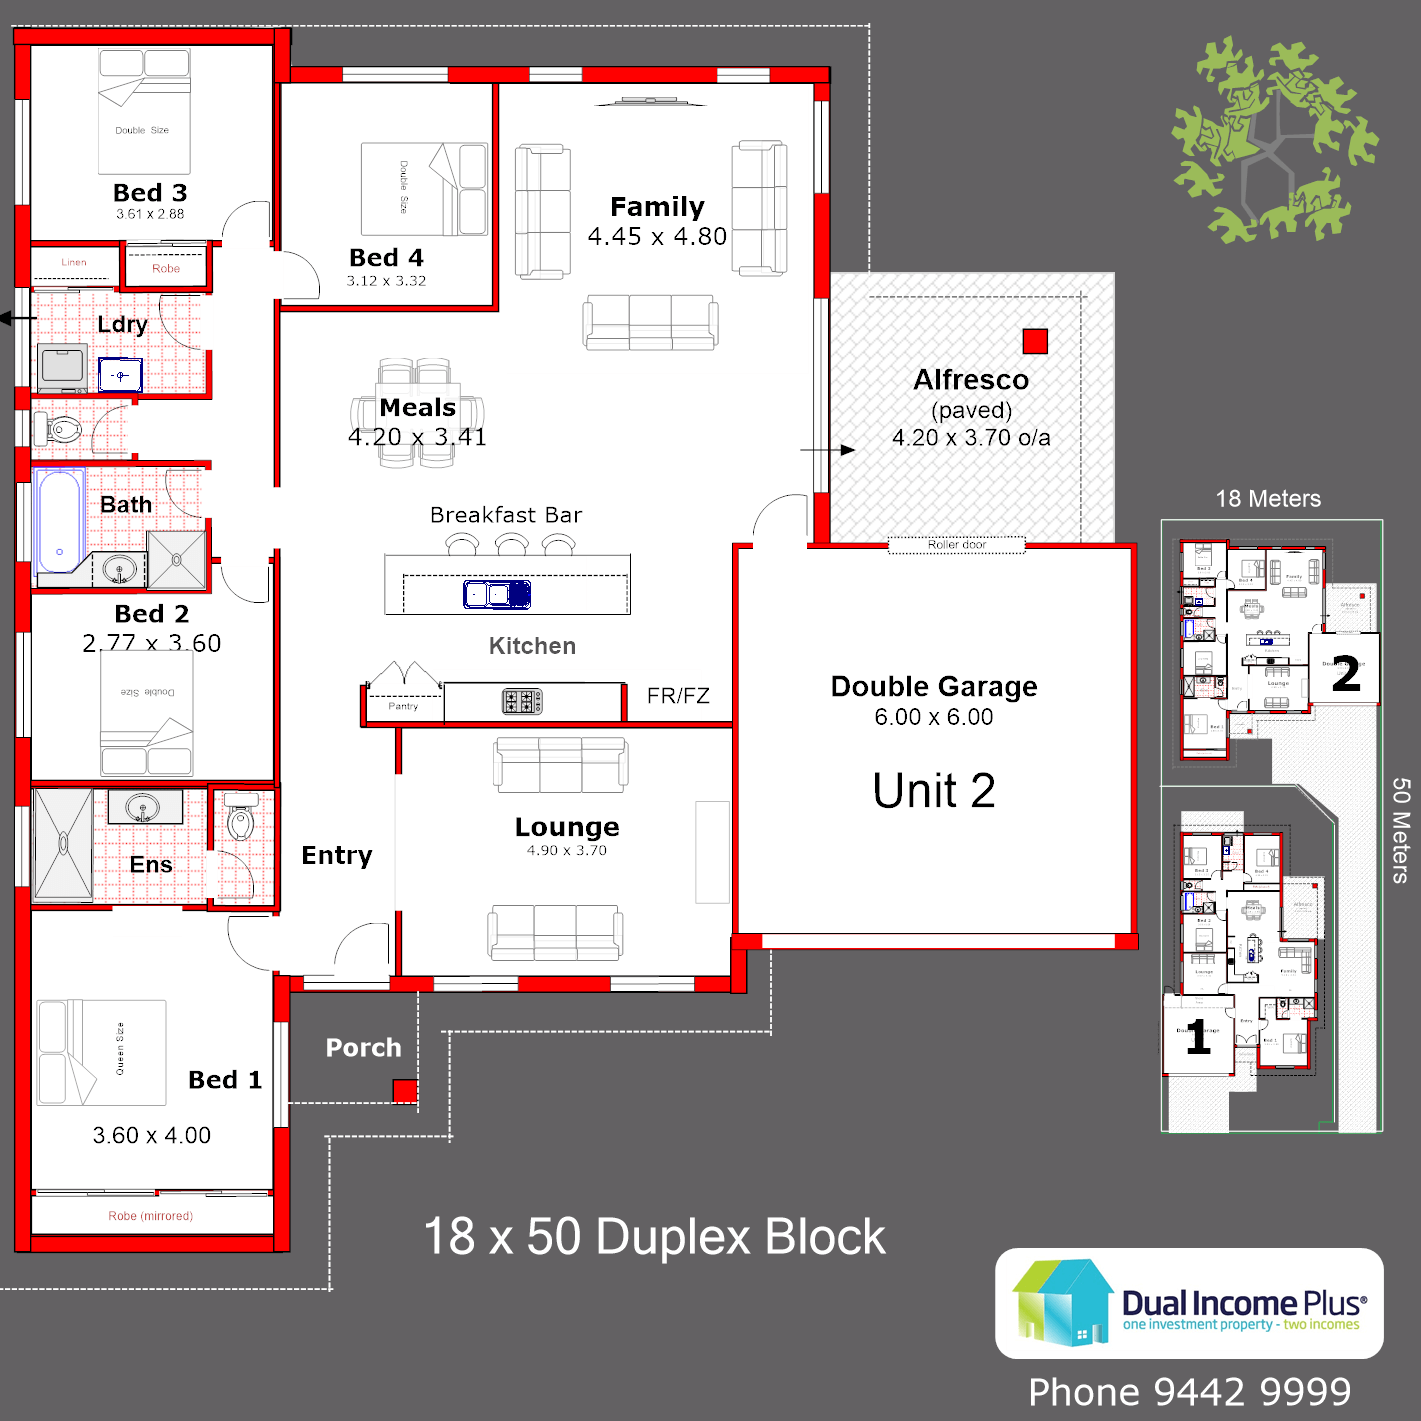 18 x 50 Duplex Block- Lot 2